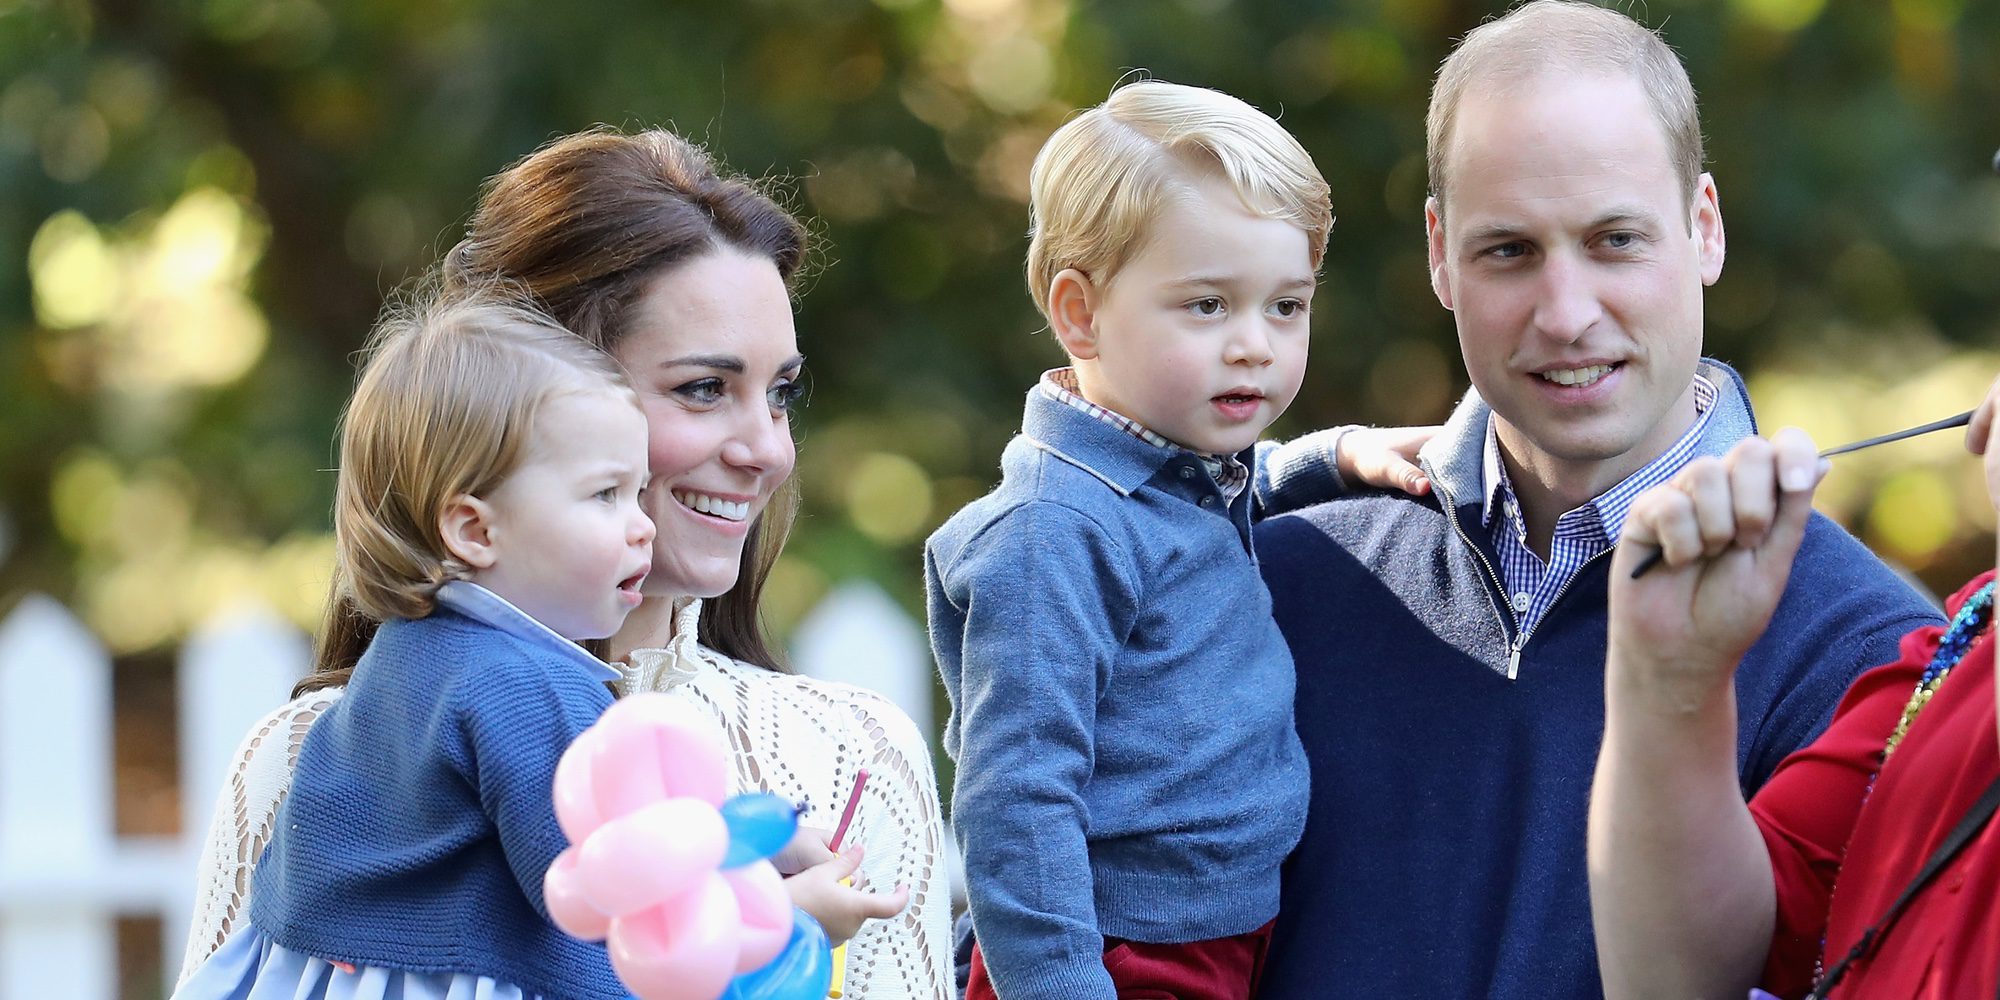 Los Príncipes Jorge y Carlota, dos niños adorables en una fiesta infantil en Canadá